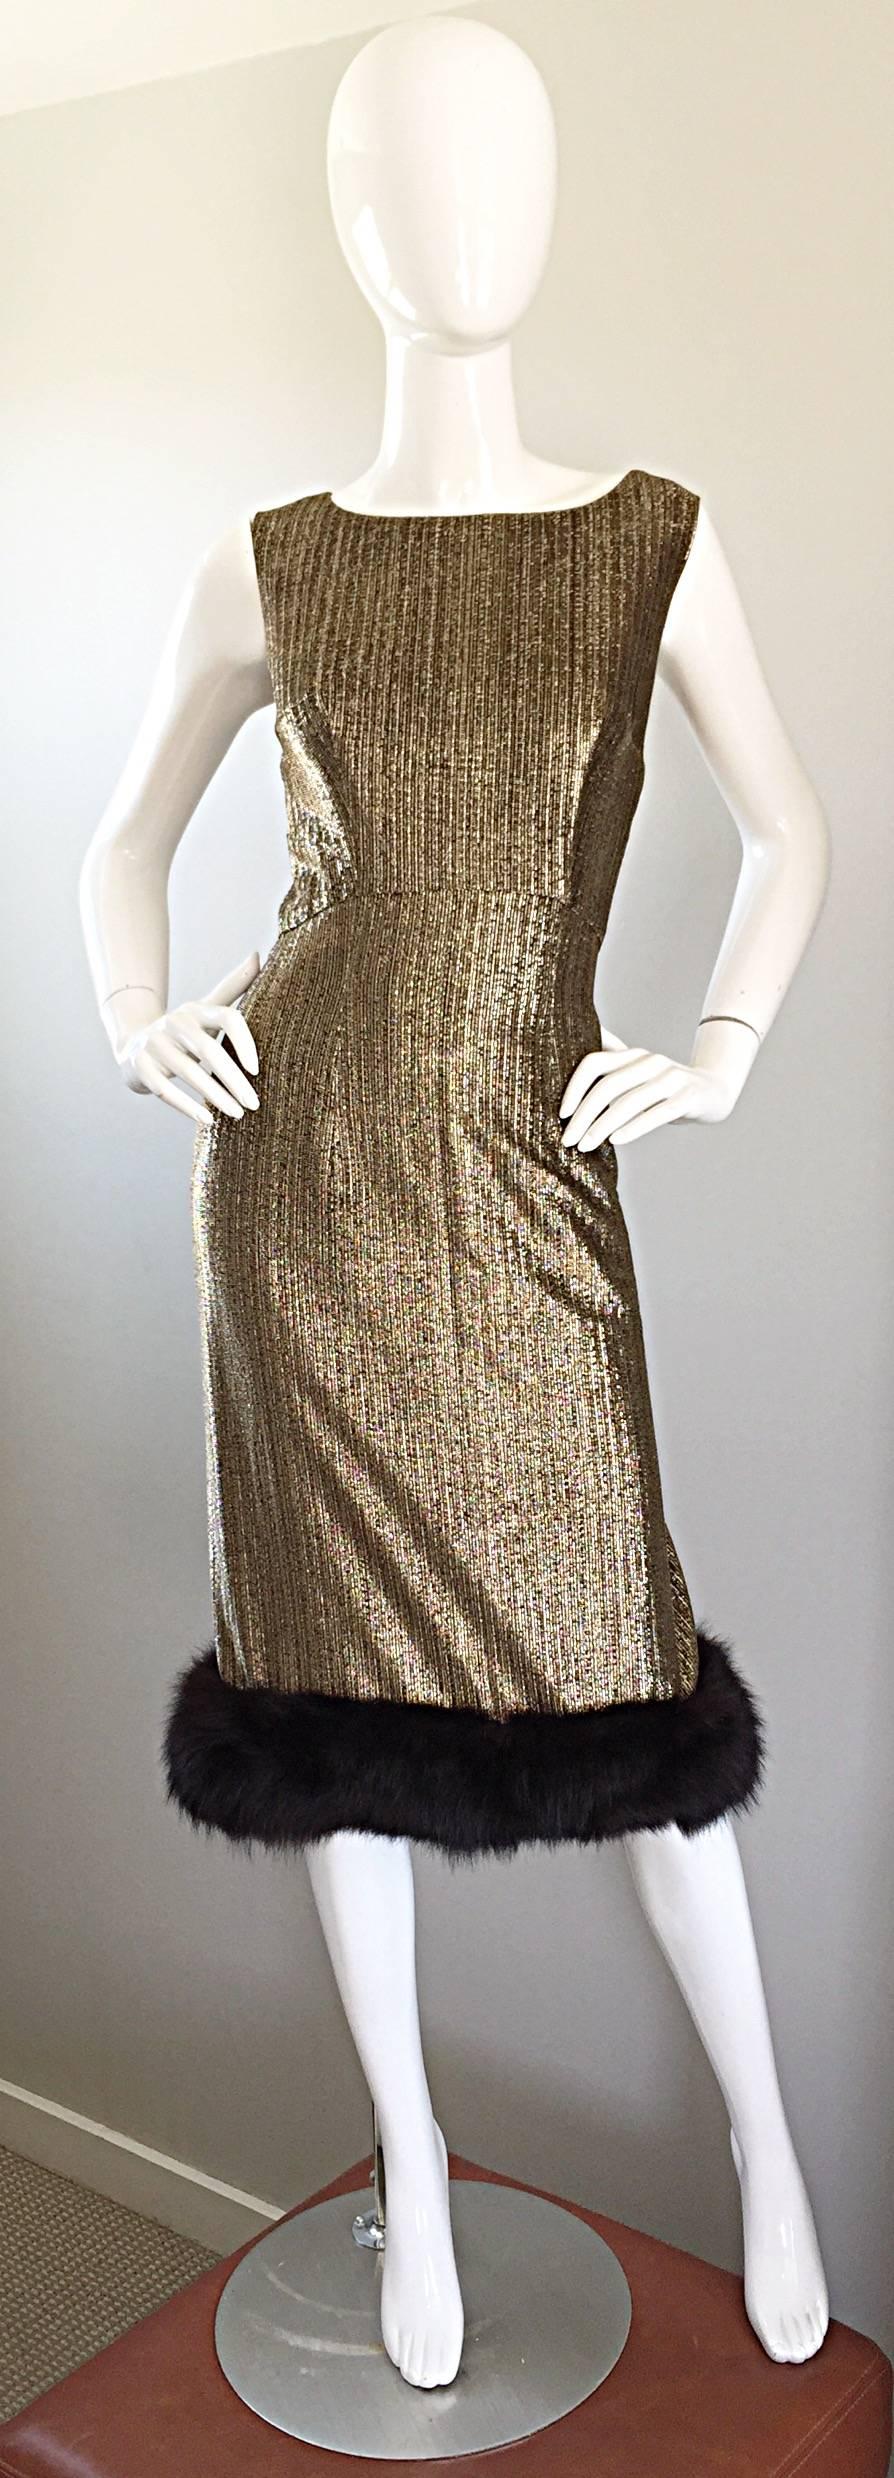 Superbe robe de cocktail JAY HERBERT des années 60 en soie lurex dorée, avec garniture en fourrure de vison marron ! La forme flatteuse épouse le corps à tous les bons endroits et accentue vraiment les courbes du corps ! Entièrement doublé, il est